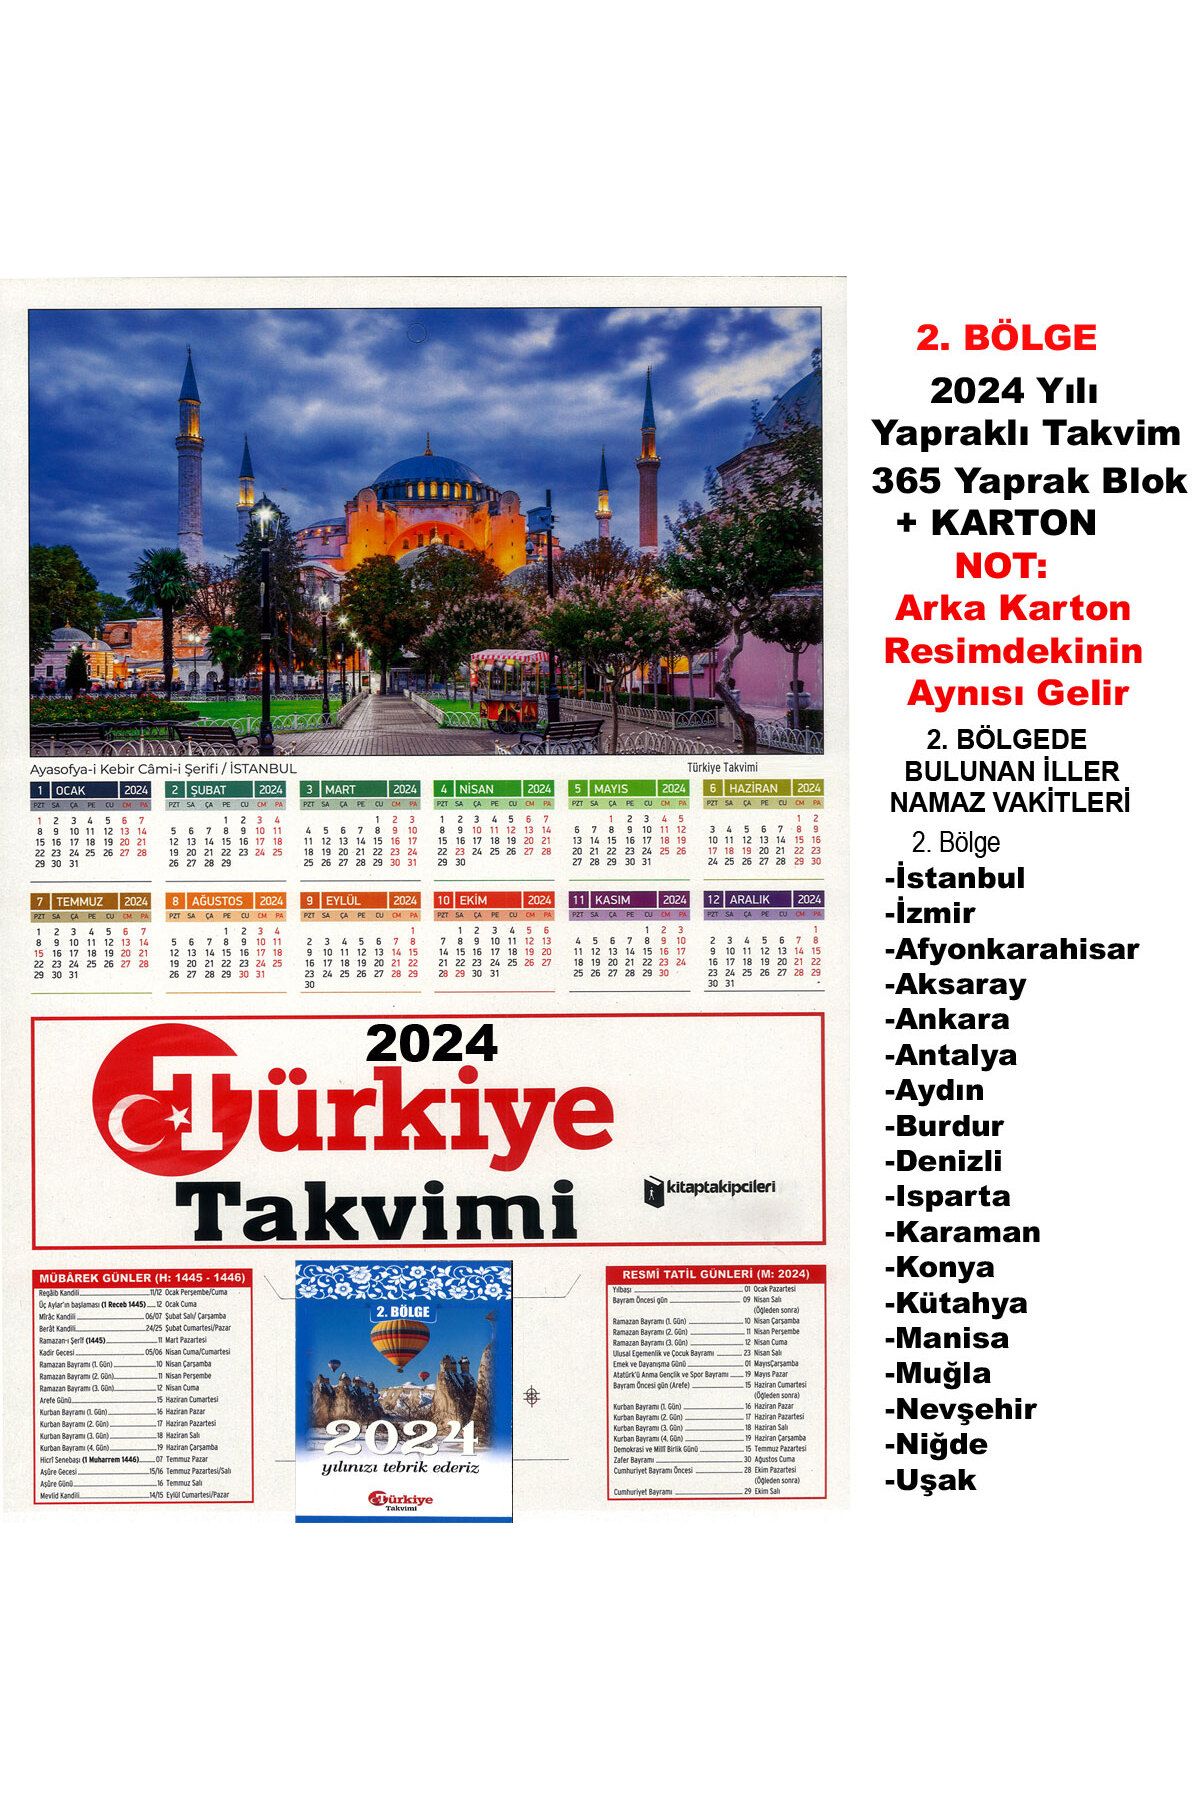 Elif Kitabevi 2. BÖLGE 2024 Yılı Türkiye Takvimi 365 Gün Yapraklı Duvar Takvimi Blok + ayasofya manzara karton